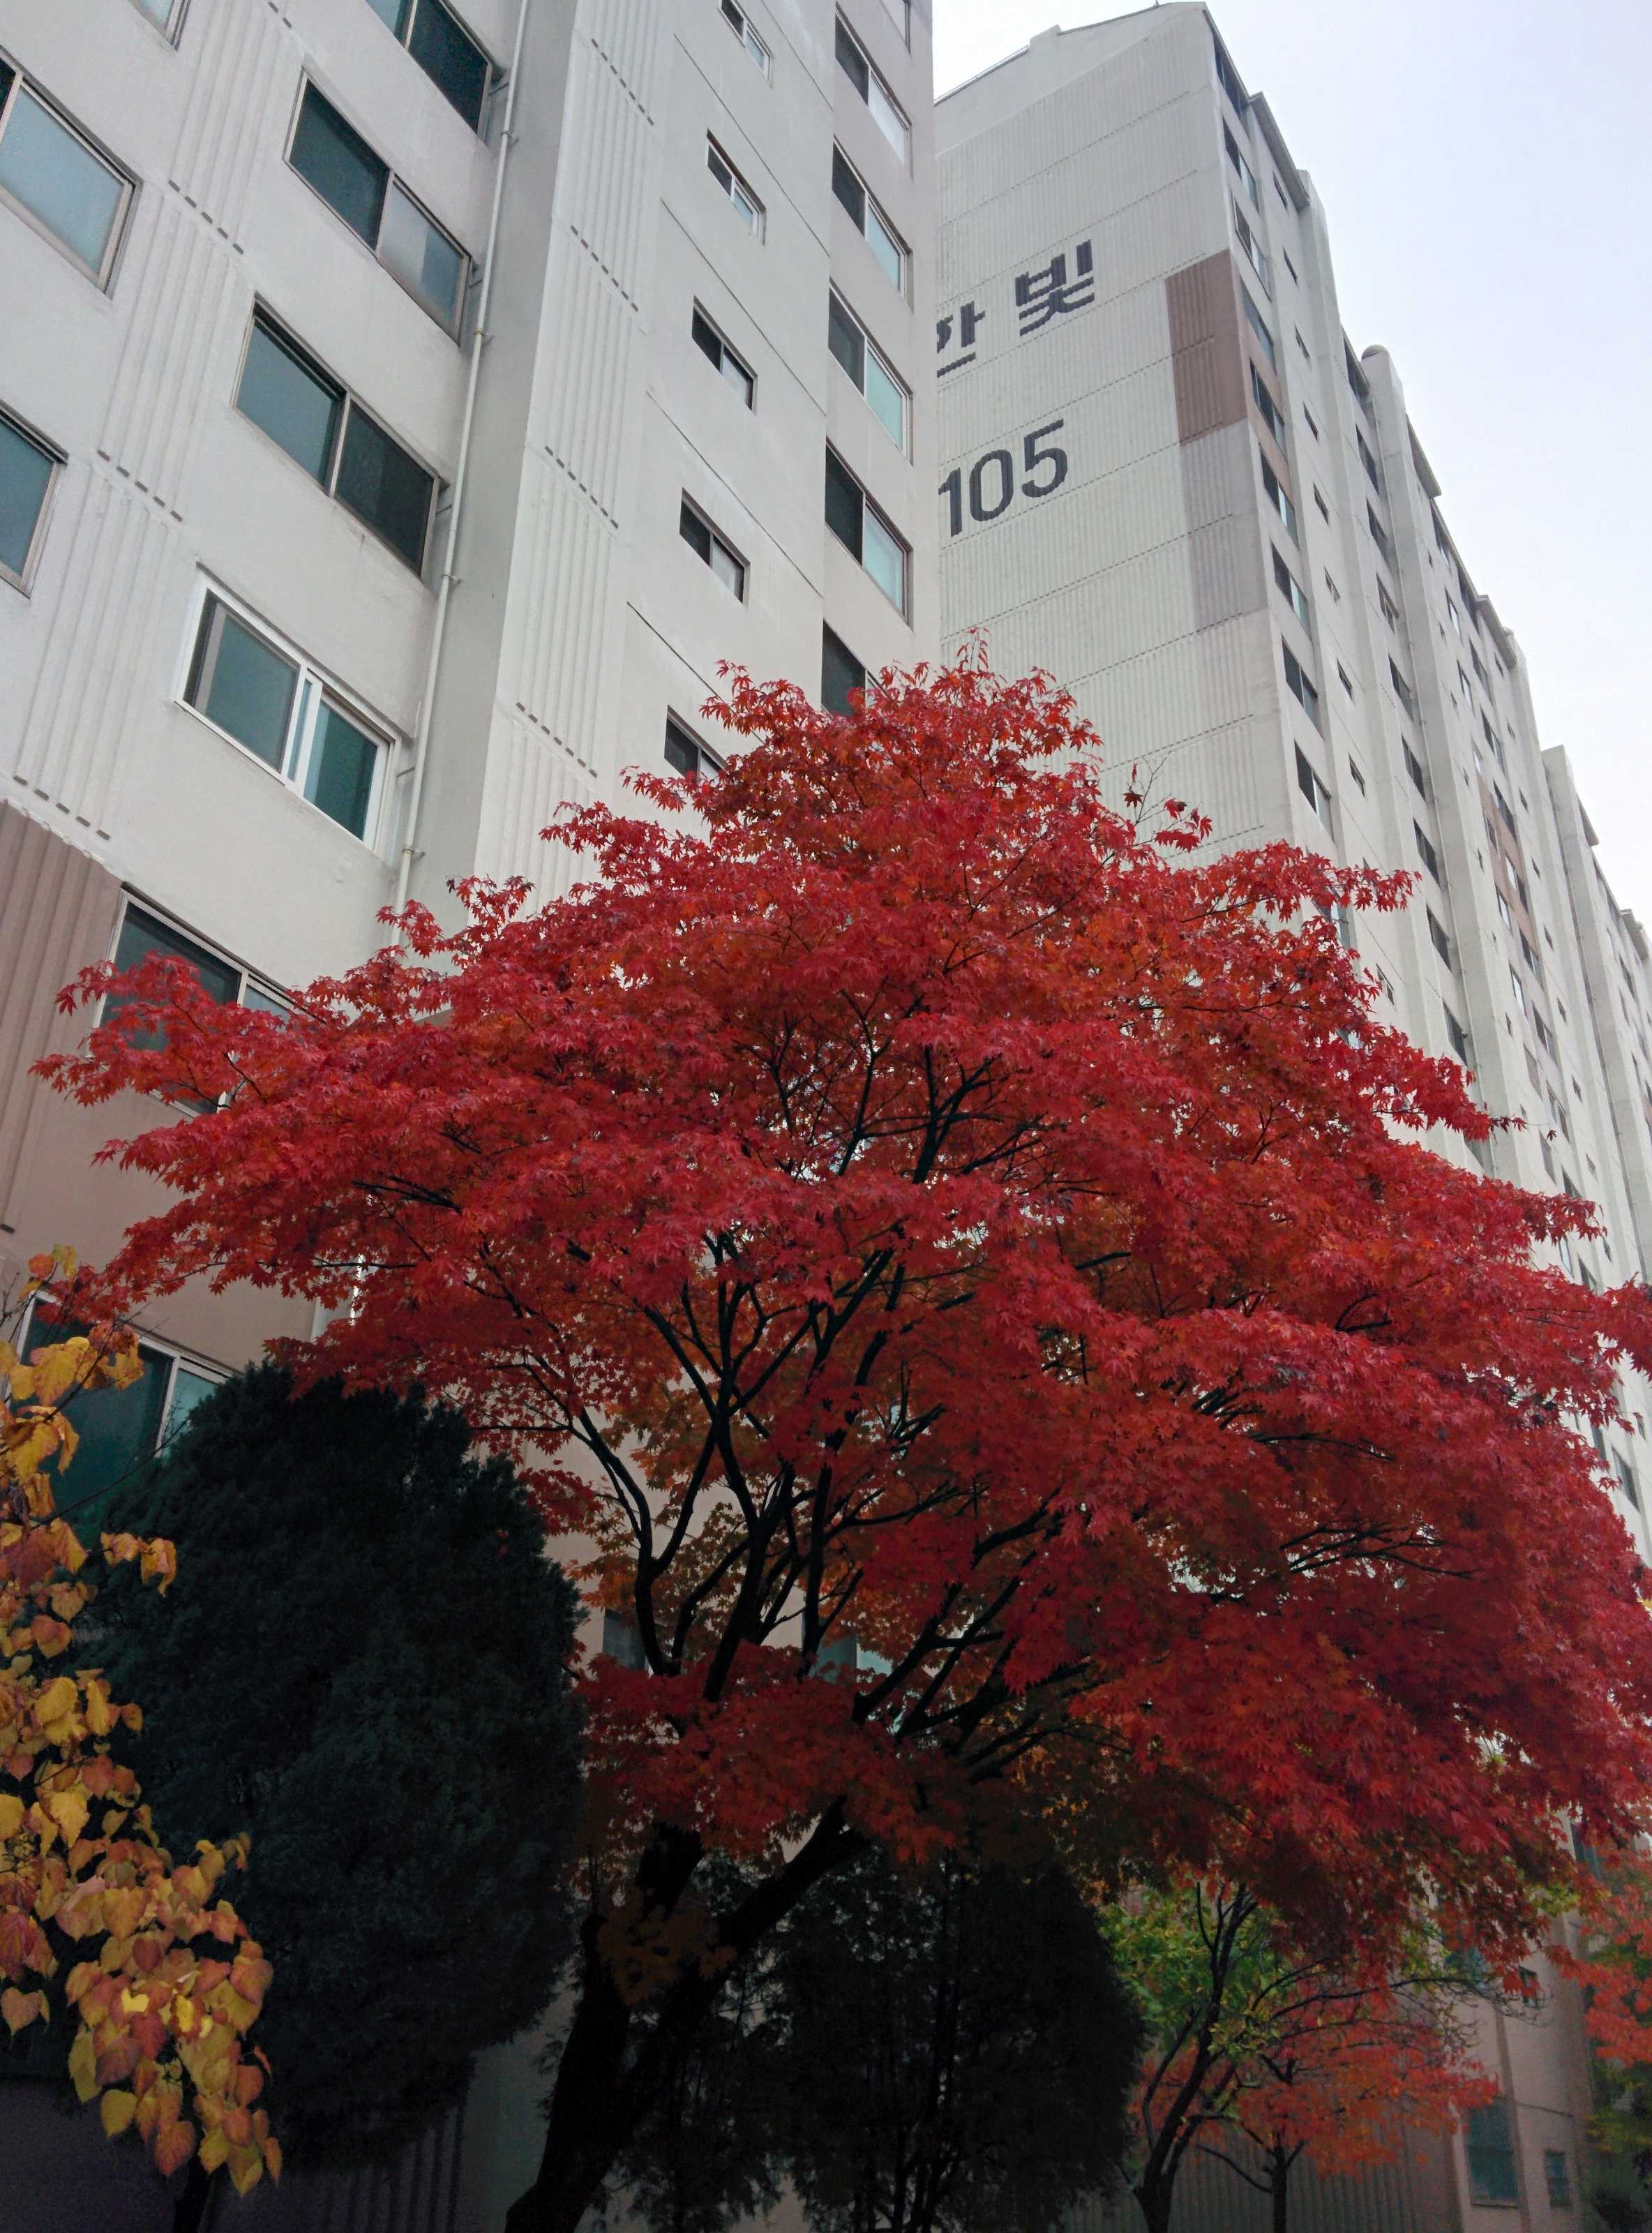 IMG_20151108_130106.jpg 비오는 날 단풍나무의 붉은색 . 단풍(丹楓)